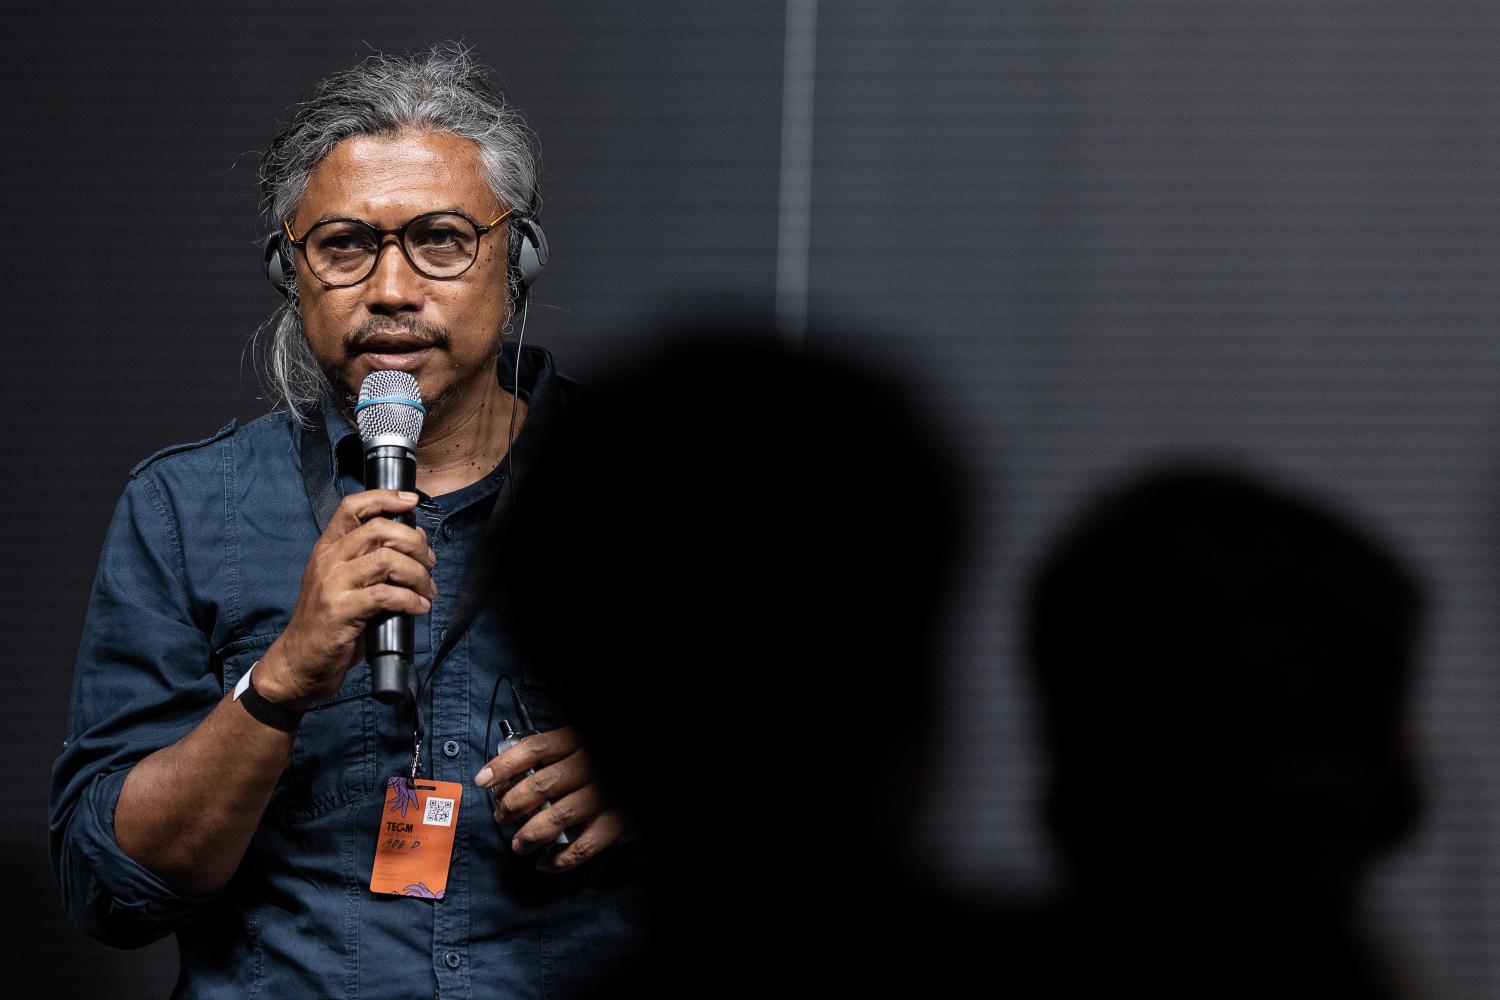 Ruangrupa-Mitglied Ade Darmawan ergreift zu Beginn der Podiumsdiskussion zur Documenta in Kassel das Wort